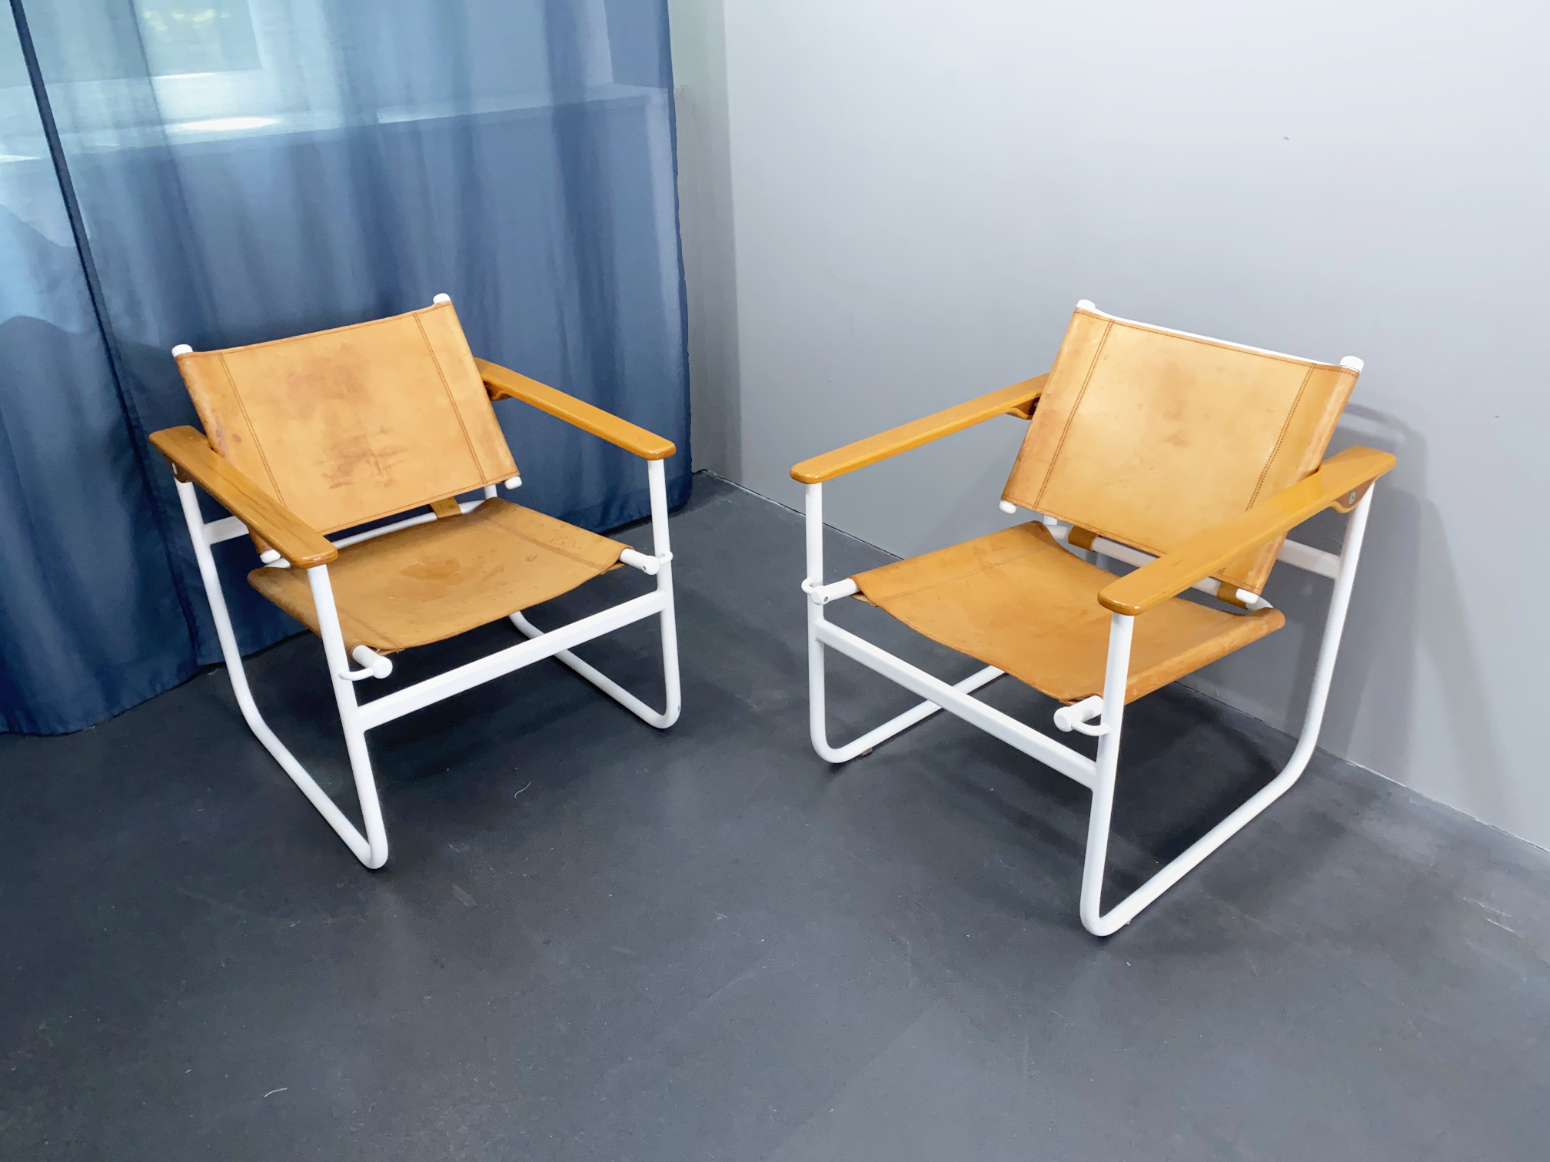 Armlehnstuhl, Lounge Chair, Modell S 75 von Waldemar Rothe für Thonet, Deutschland, 1982.  Aus dem Nachlass von Waldemar Rothe. Produziert 1982-84.